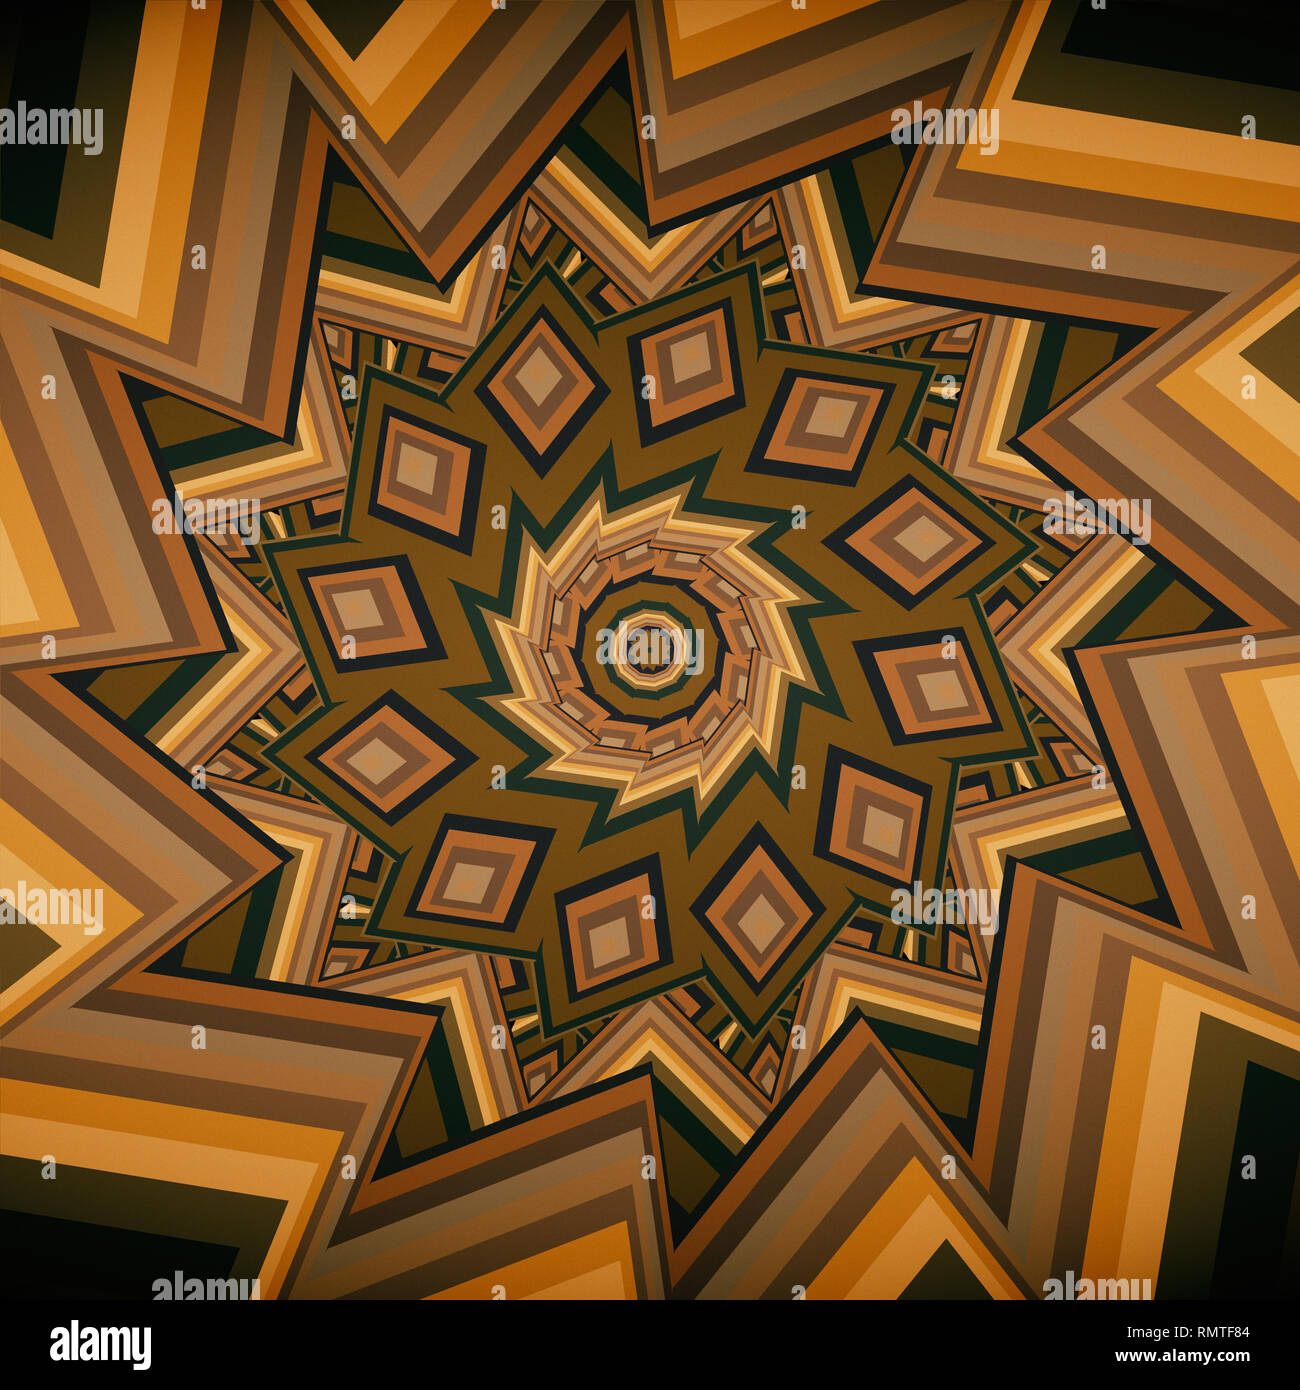 Colorido marrón cálido calidoscopio mandala ornamento fractal de yoga, clubes, espectáculos Foto de stock